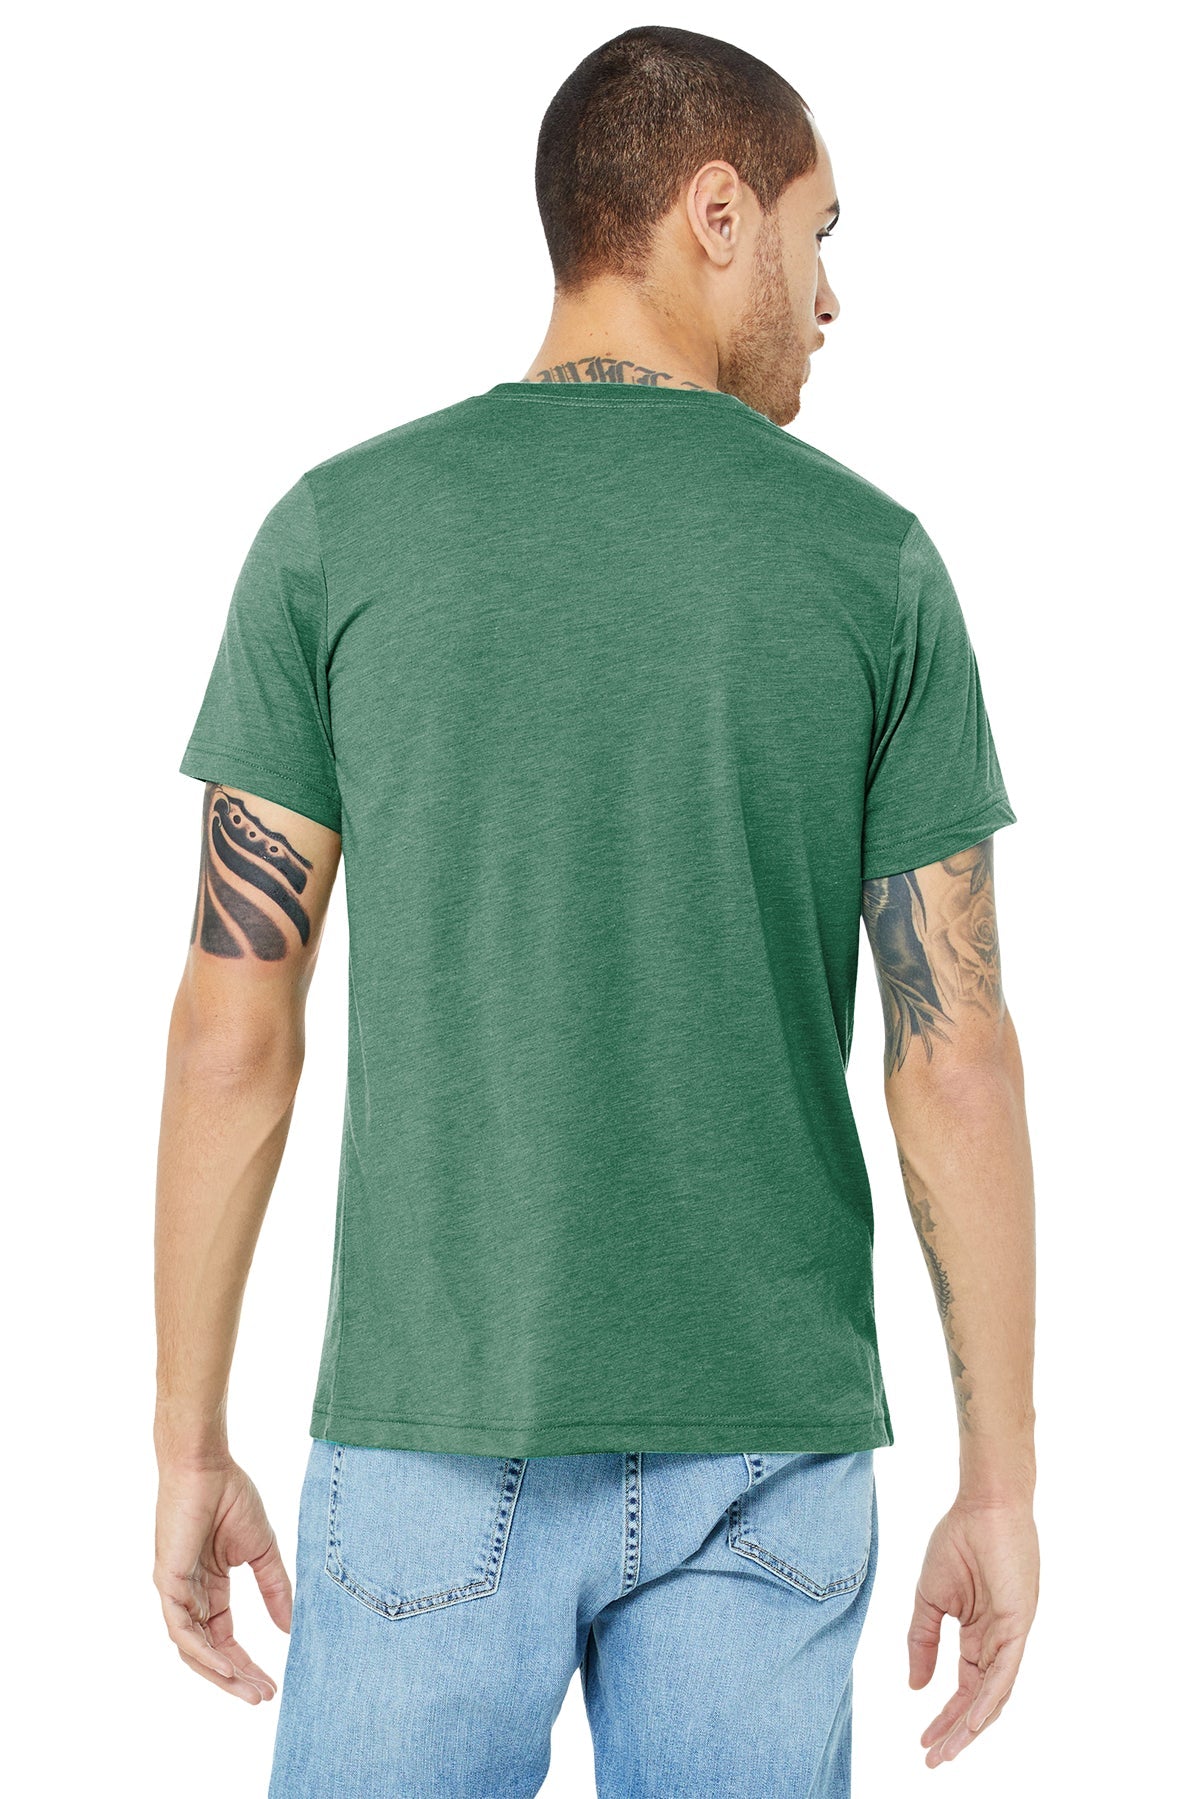 bella + canvas unisex triblend short sleeve t-shirt 3413c grass grn trblnd